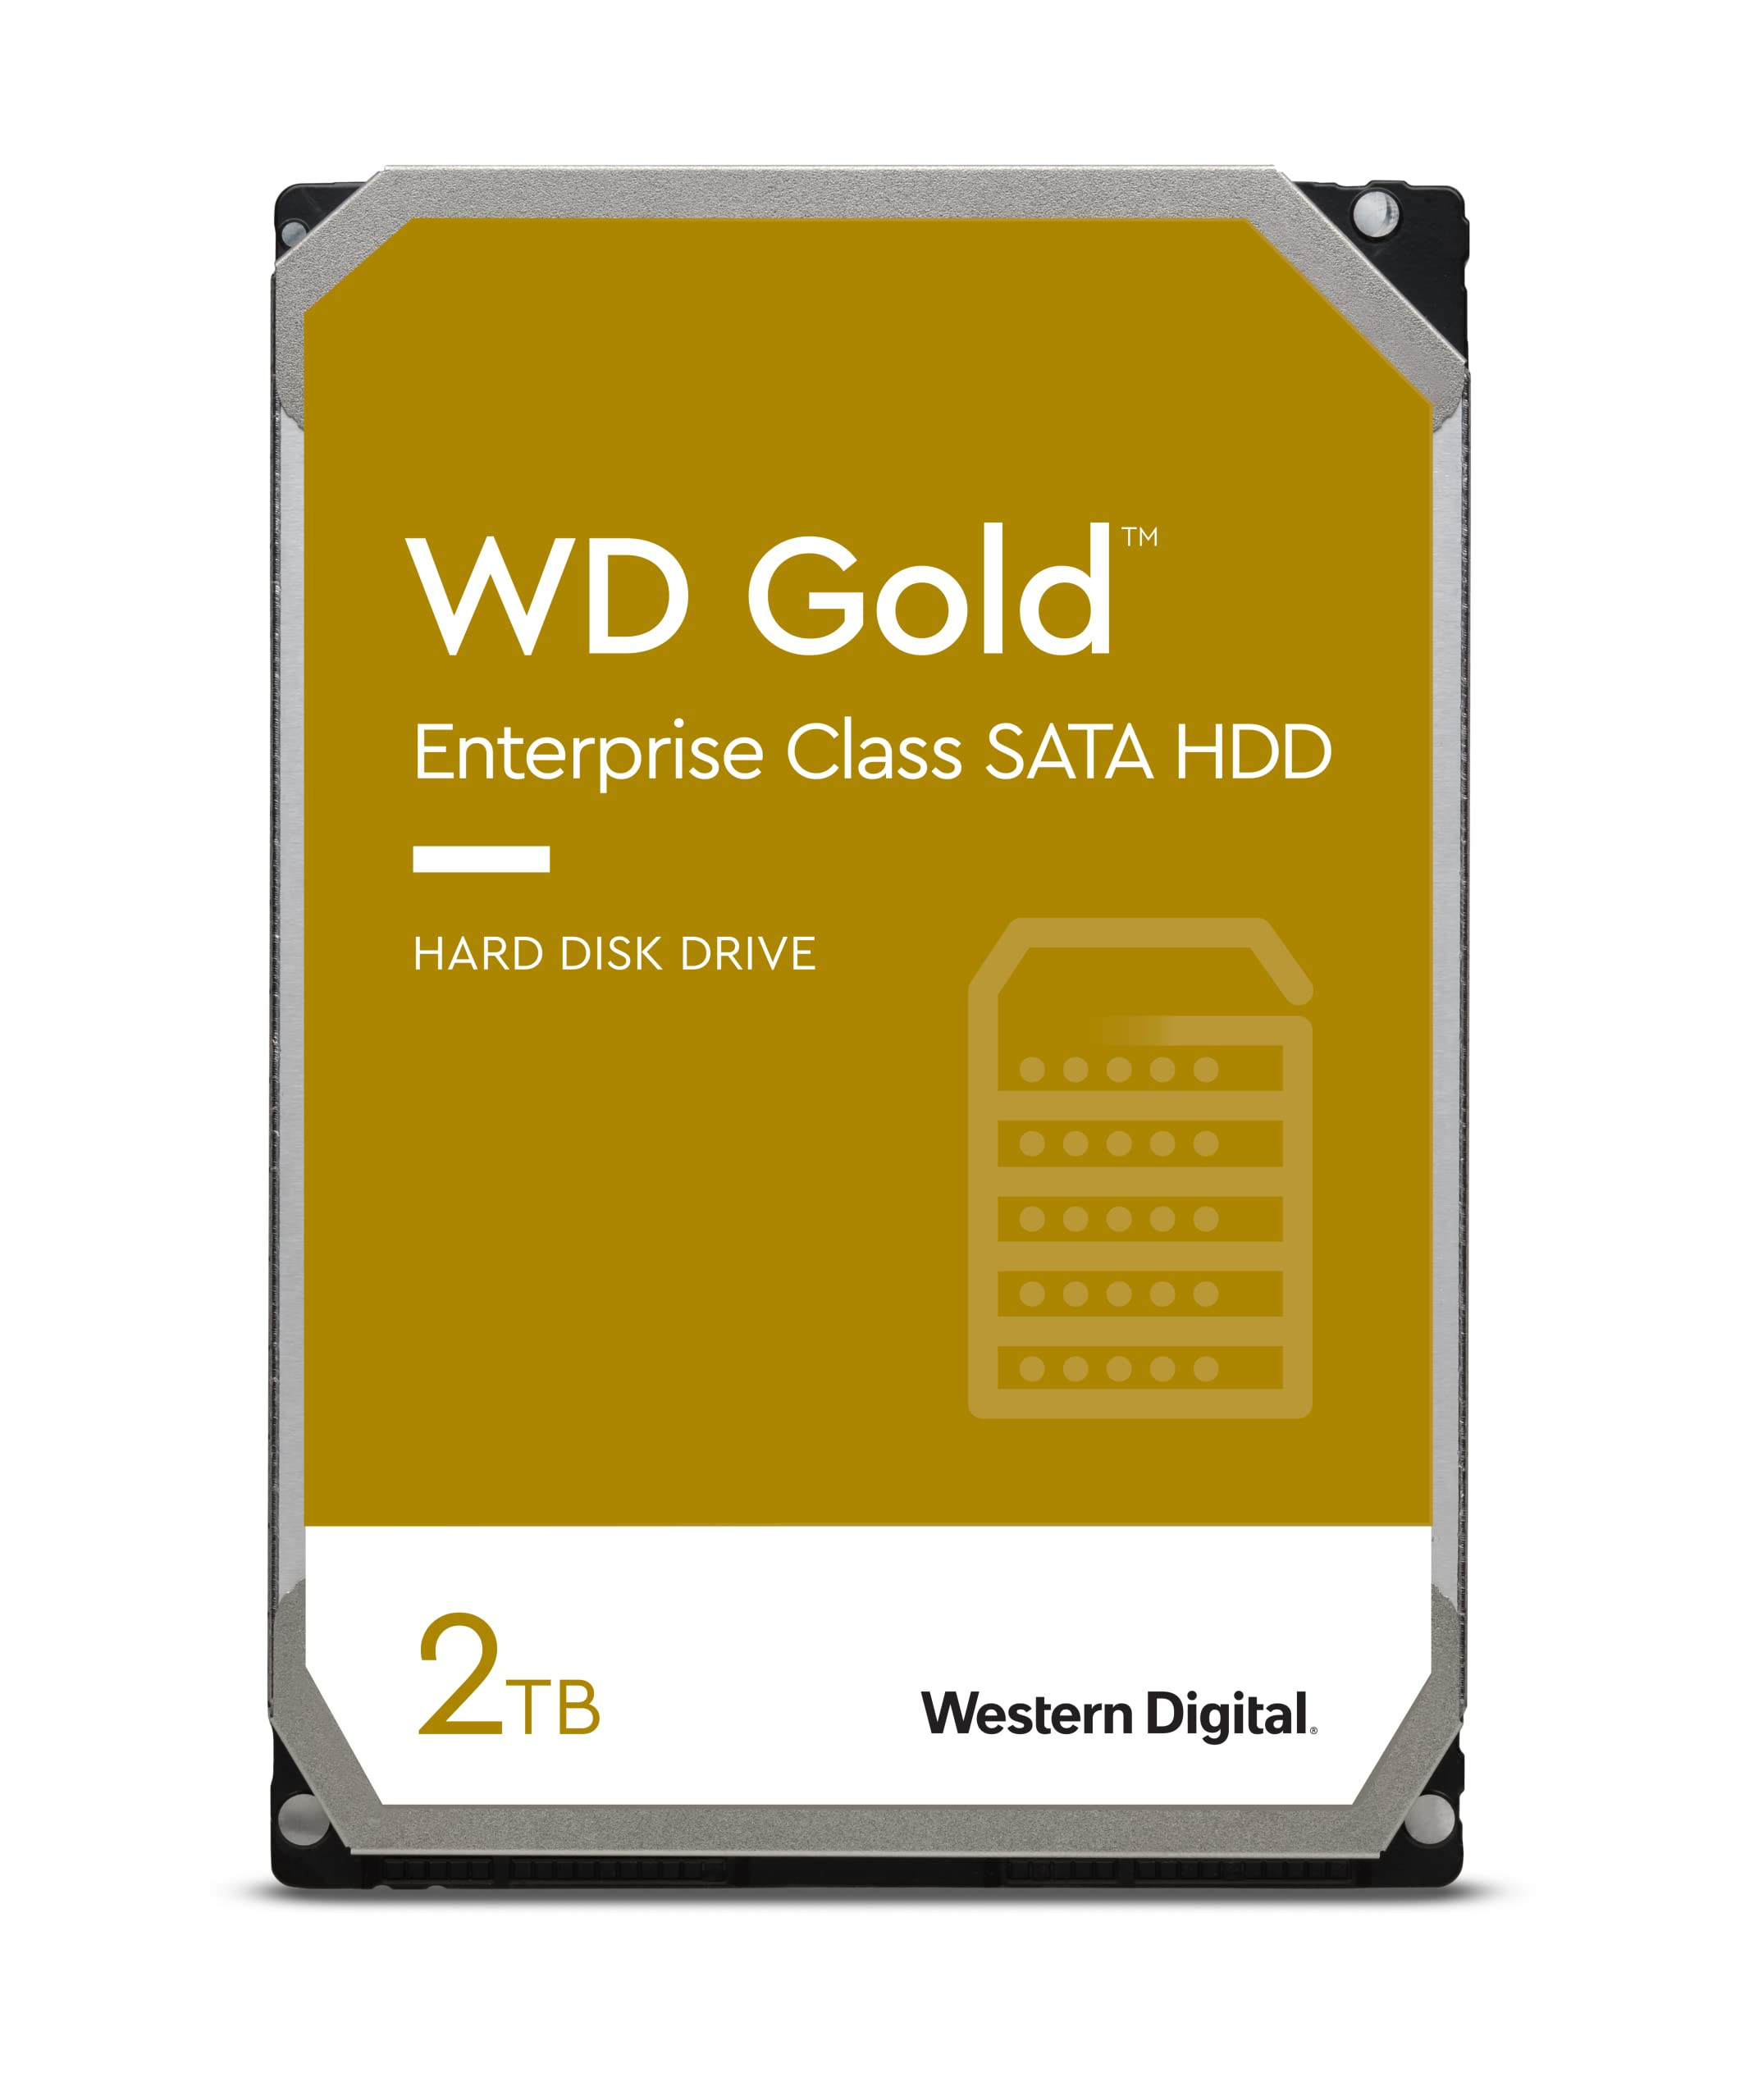 Western Digital HDD 2TB WD Gold エンタープライズ 3.5インチ 内蔵HDD WD2005FBYZ並行輸入品